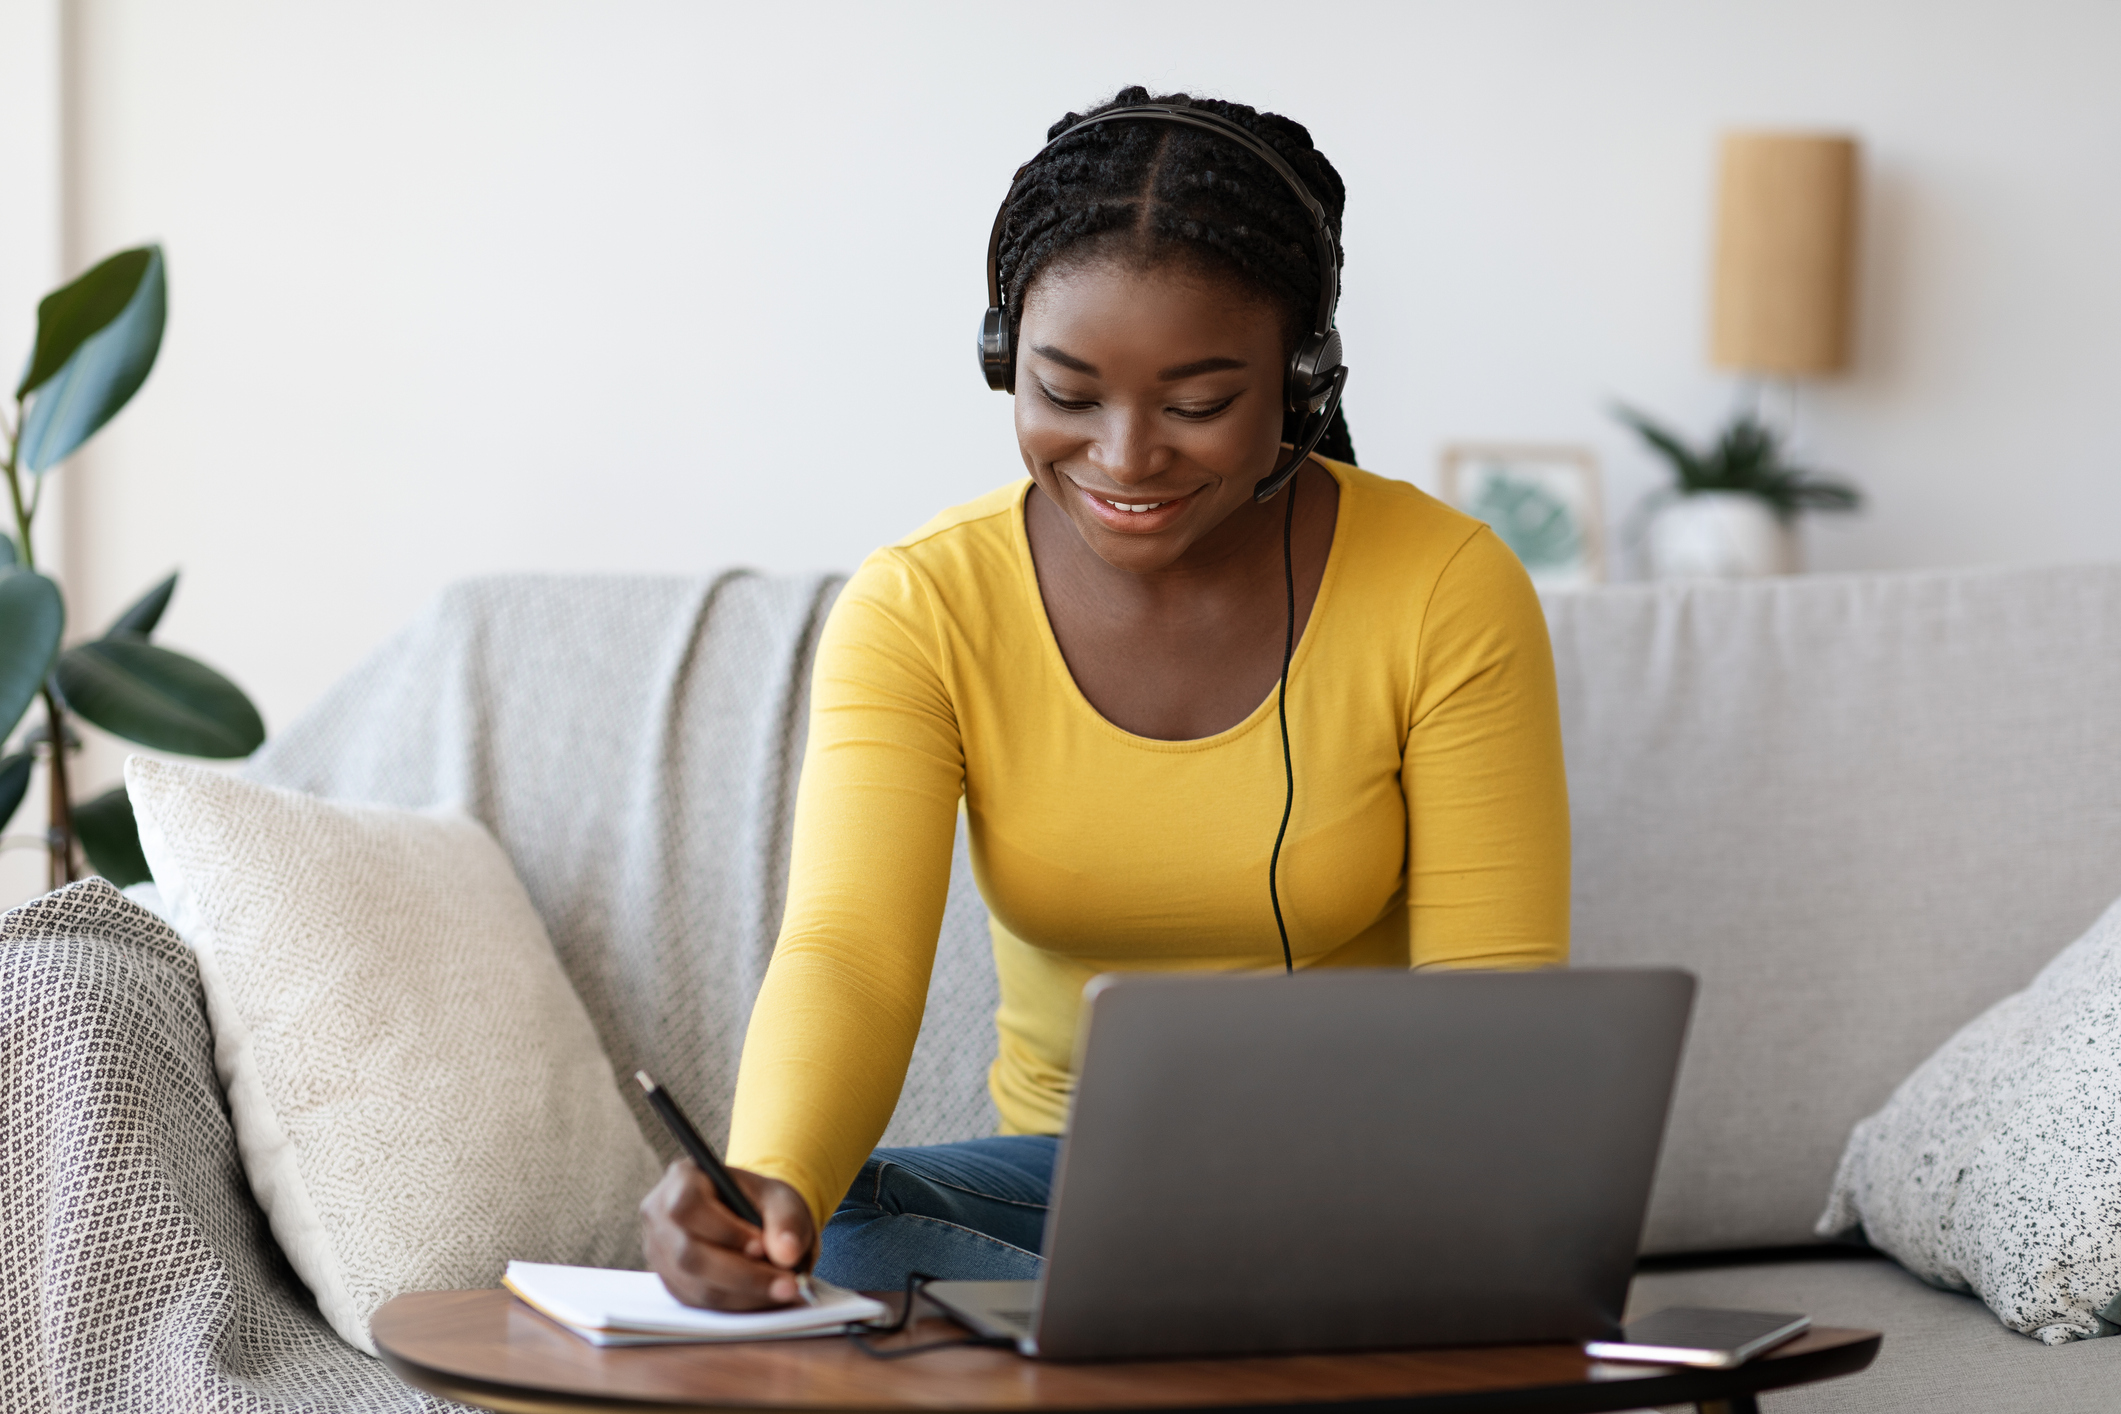 Mulher negra veste uma camiseta amarela sentada no sofá enquanto mexe num computador com um headphone e escreve com uma caneta em um papel anotações.